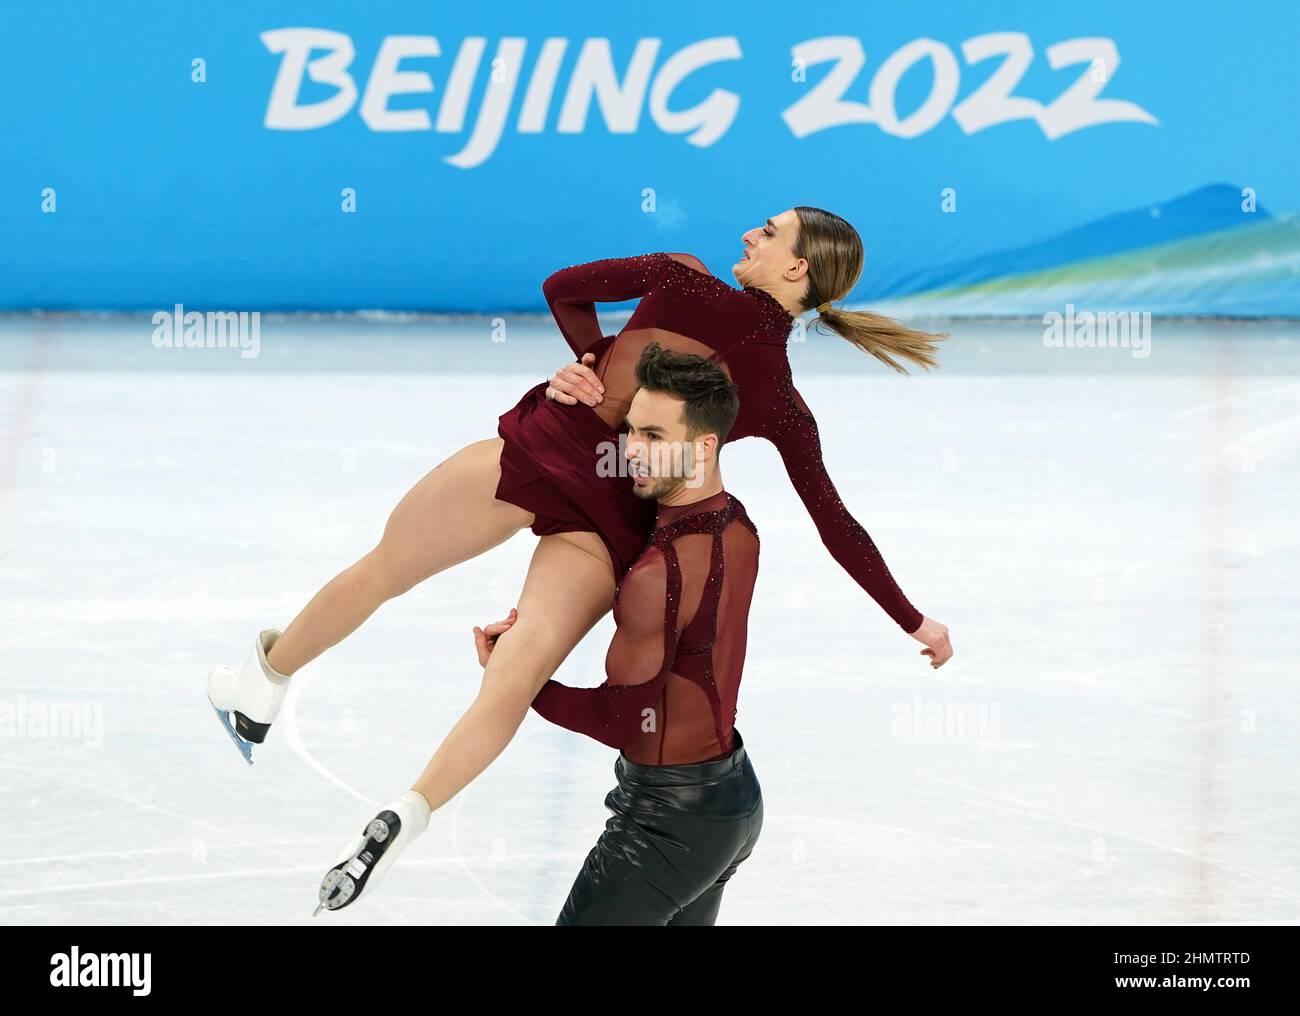 Guillaume Cizeron et Gabriella Papadakis pendant la danse sur glace - danse du rythme au stade intérieur de la capitale le huitième jour des Jeux Olympiques d'hiver de 2022 à Beijing, Chine. Date de la photo: Samedi 12 février 2022. Banque D'Images